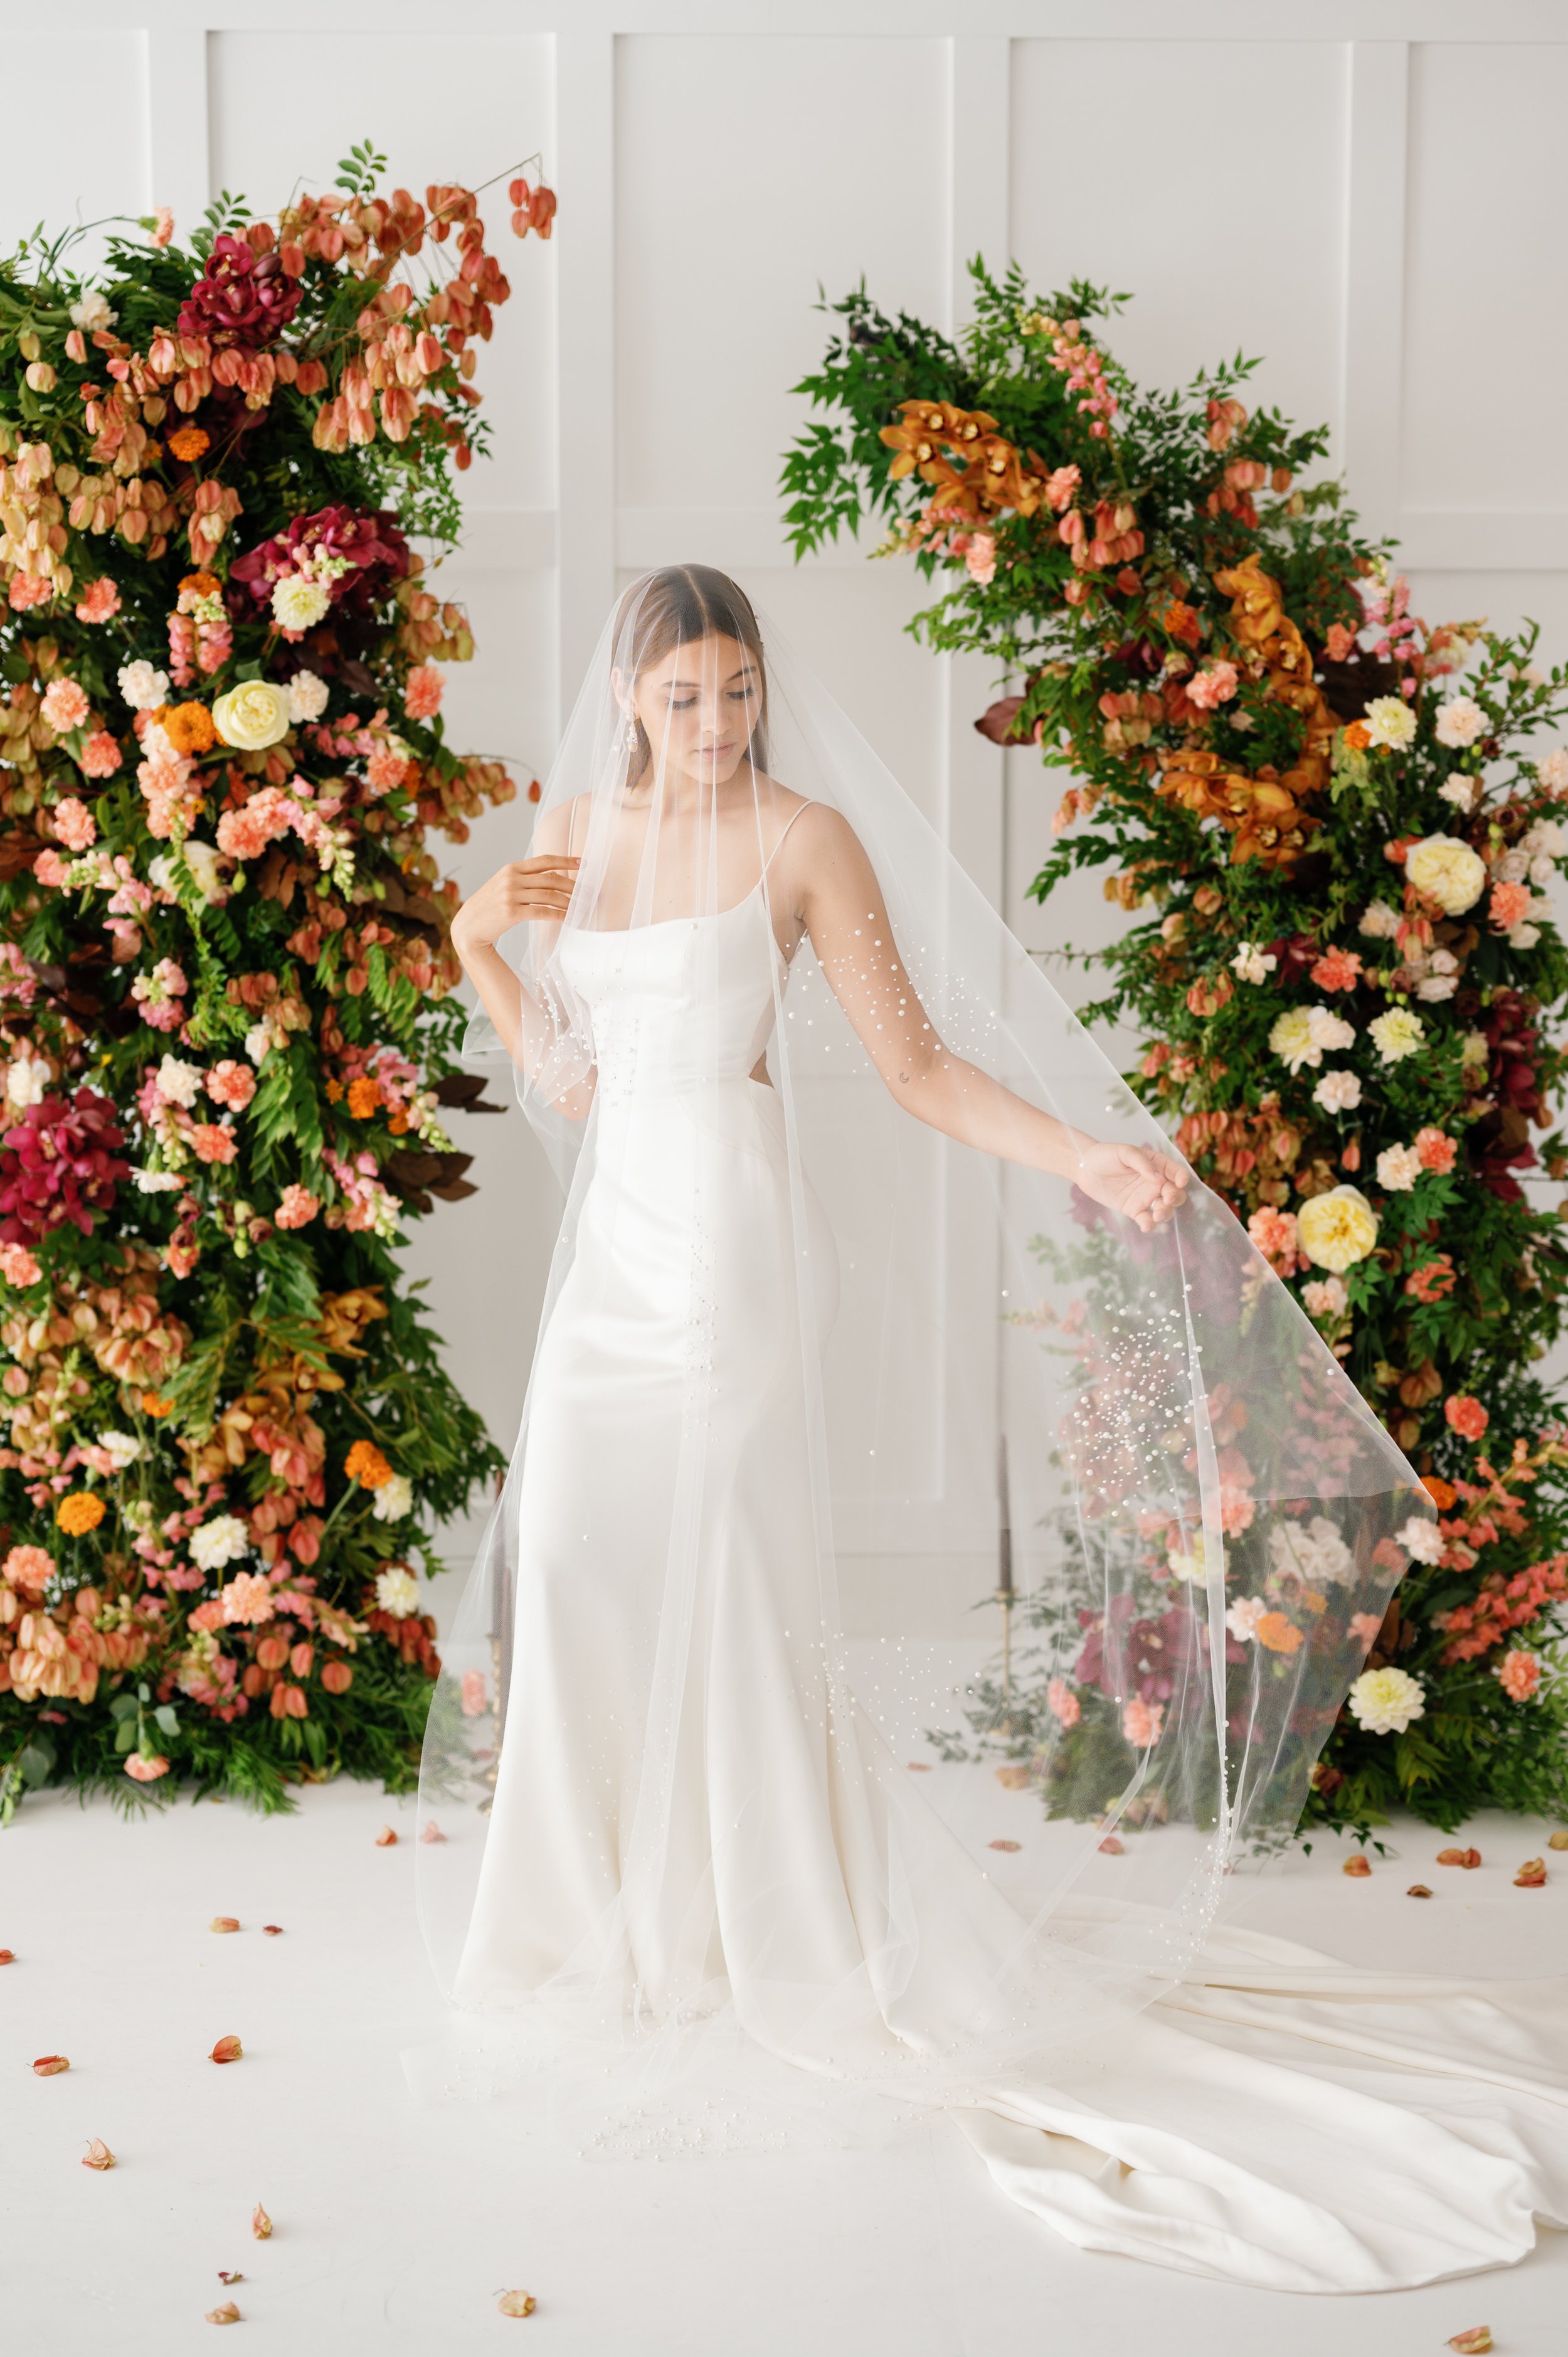 https://images.squarespace-cdn.com/content/v1/597a4eb26b8f5b23f7093a9e/95fe0a98-a9b5-4e7e-b603-937de016d64a/Wedding+Veil+with+Wedding+Dress